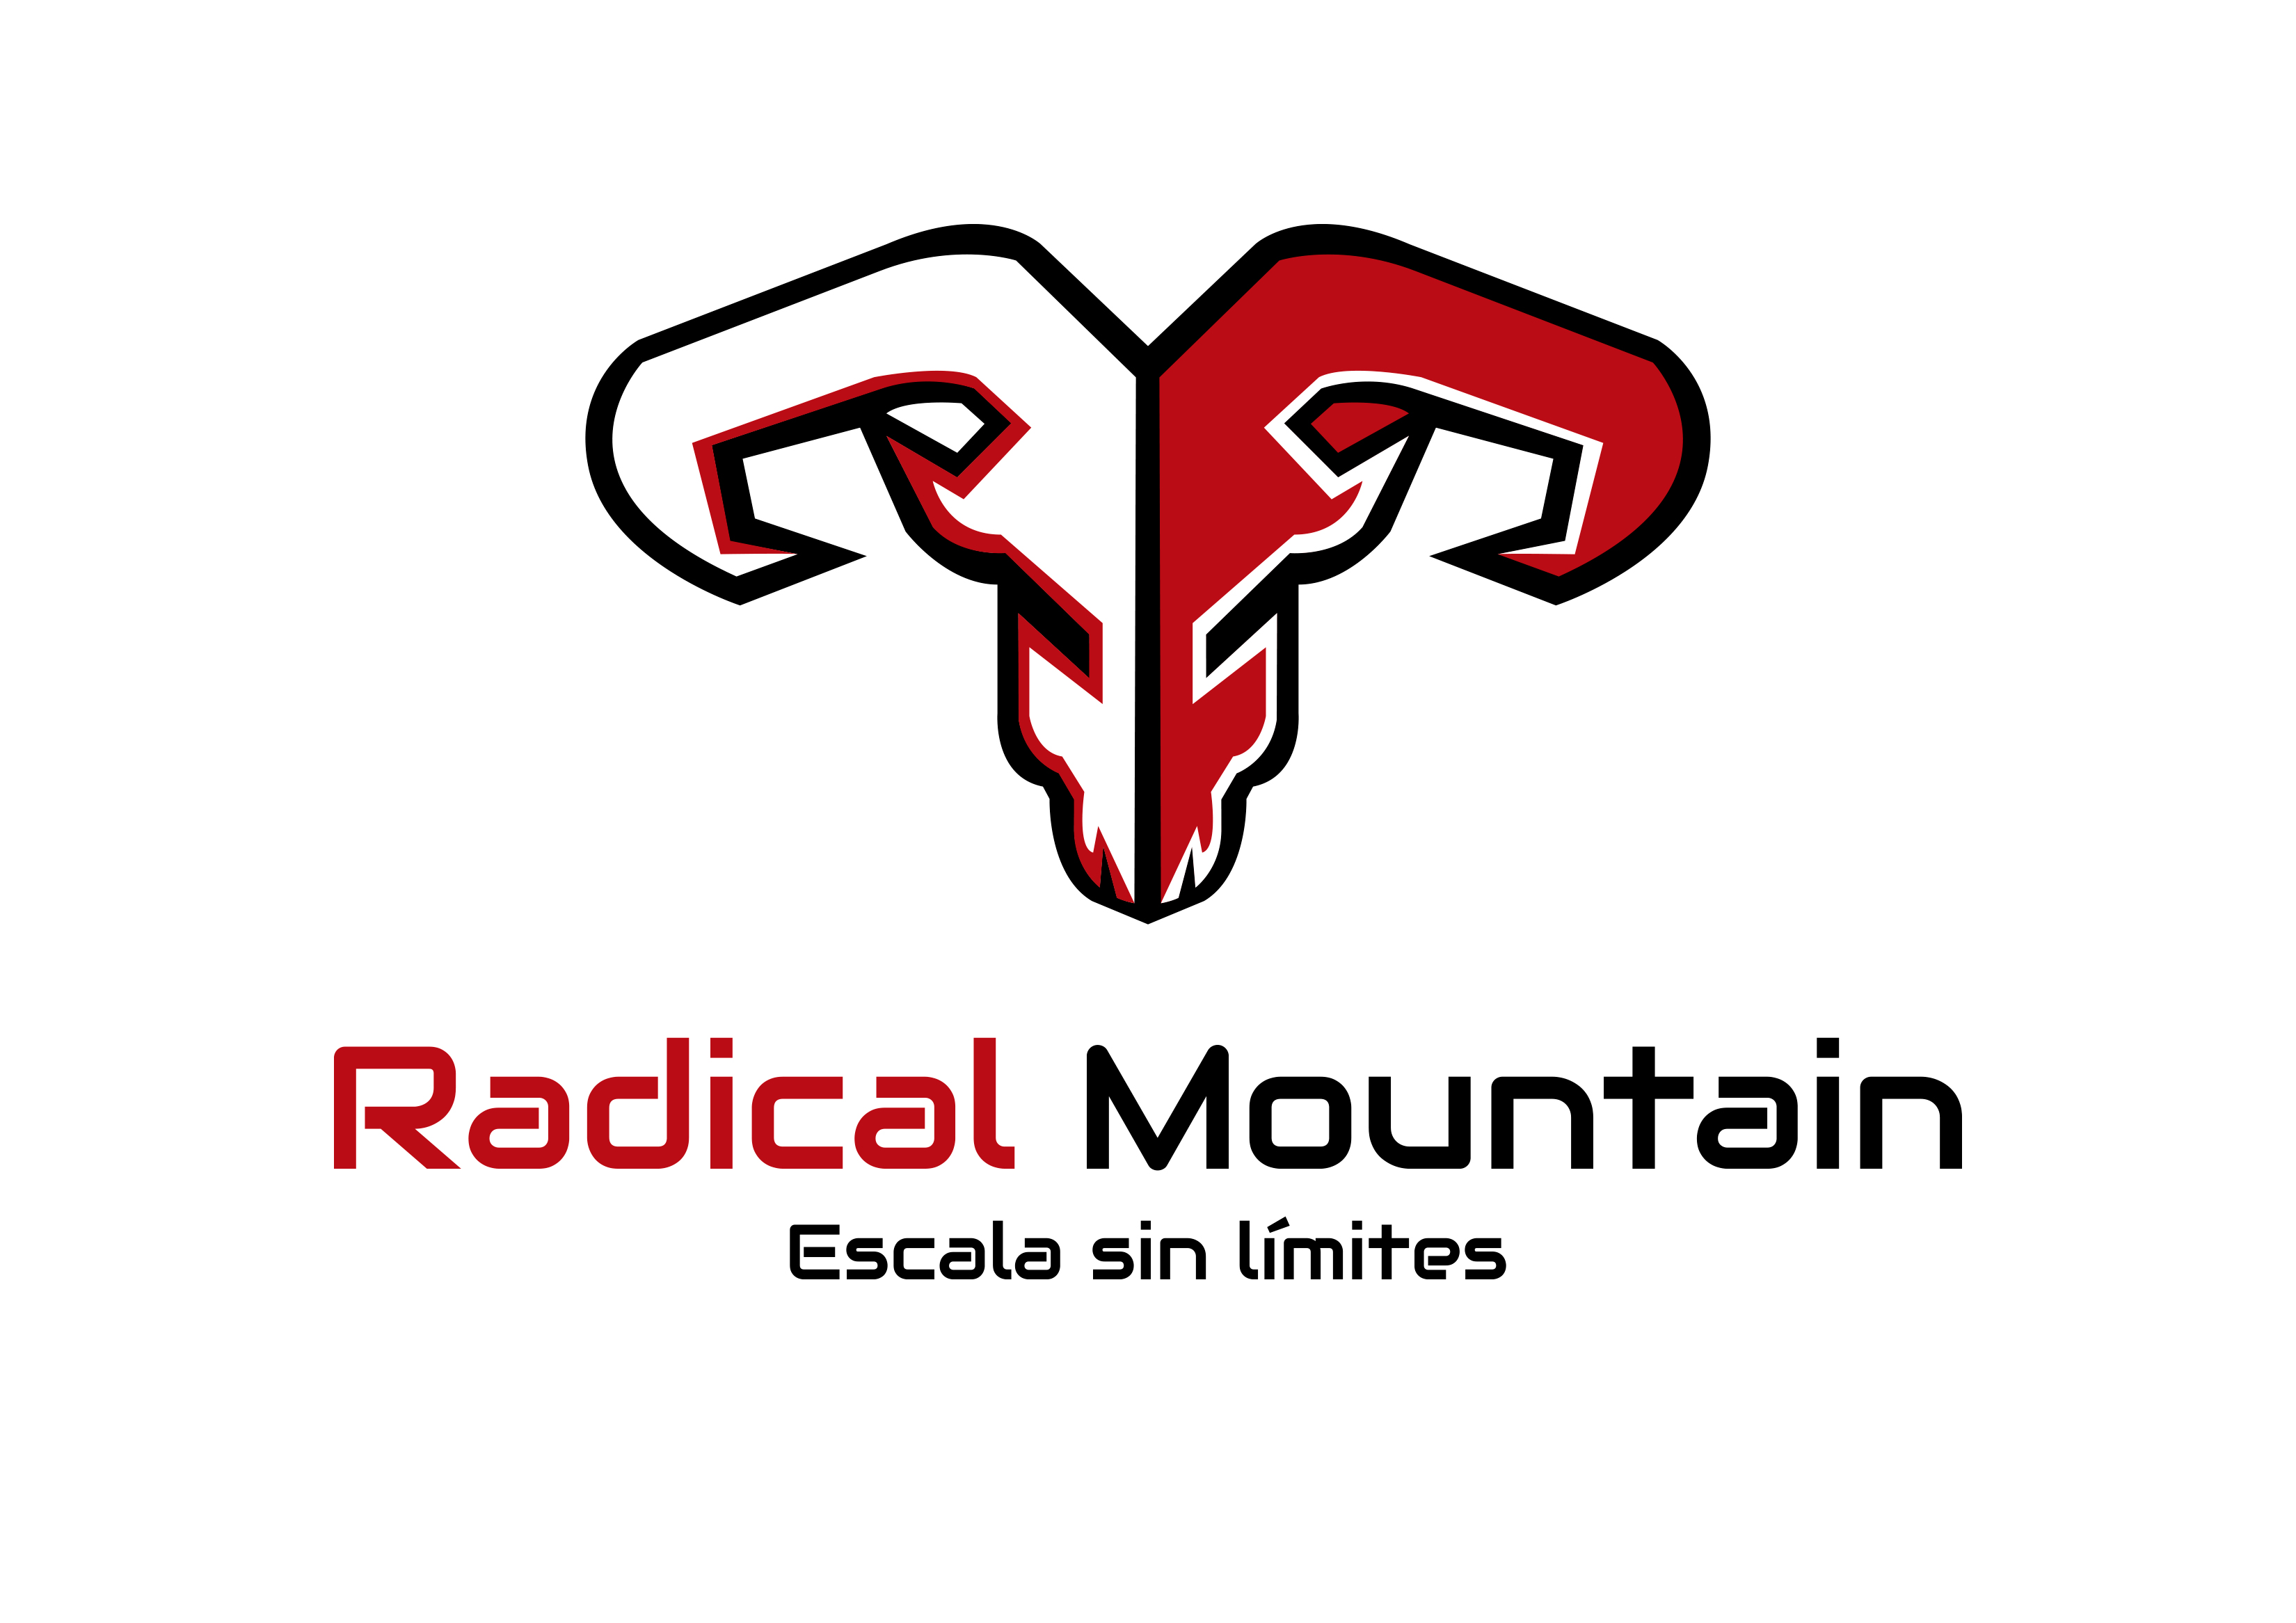 Radical Mountain